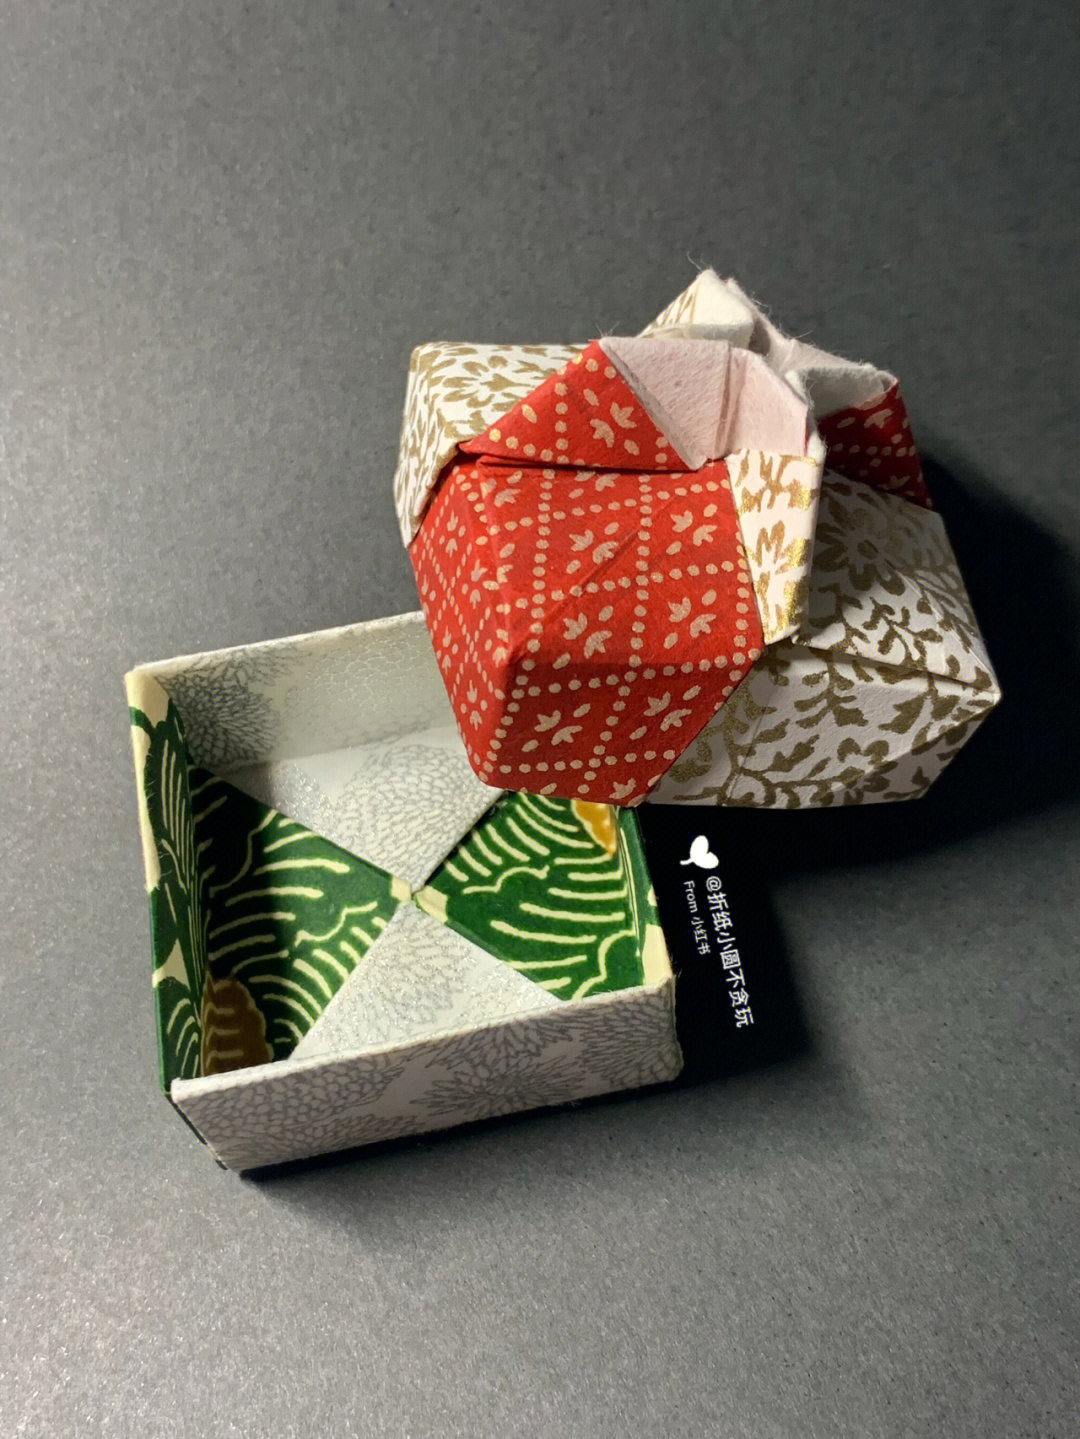 一张纸折正方形小盒子图片